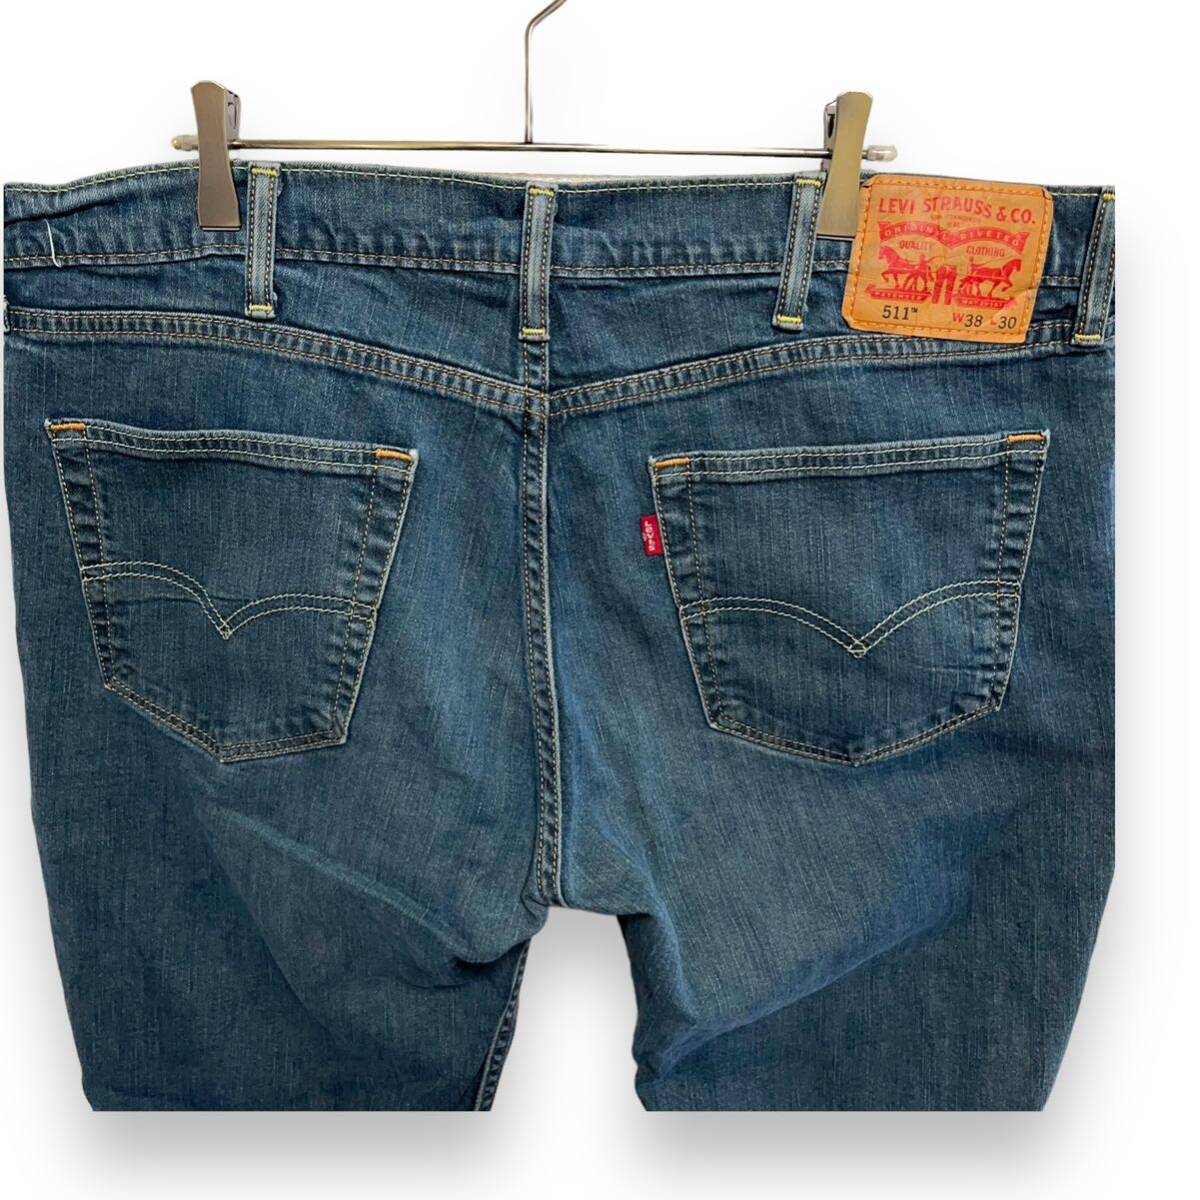 D49 Levi's 511 w38 America old clothes slim jeans Denim pants Levis men's 